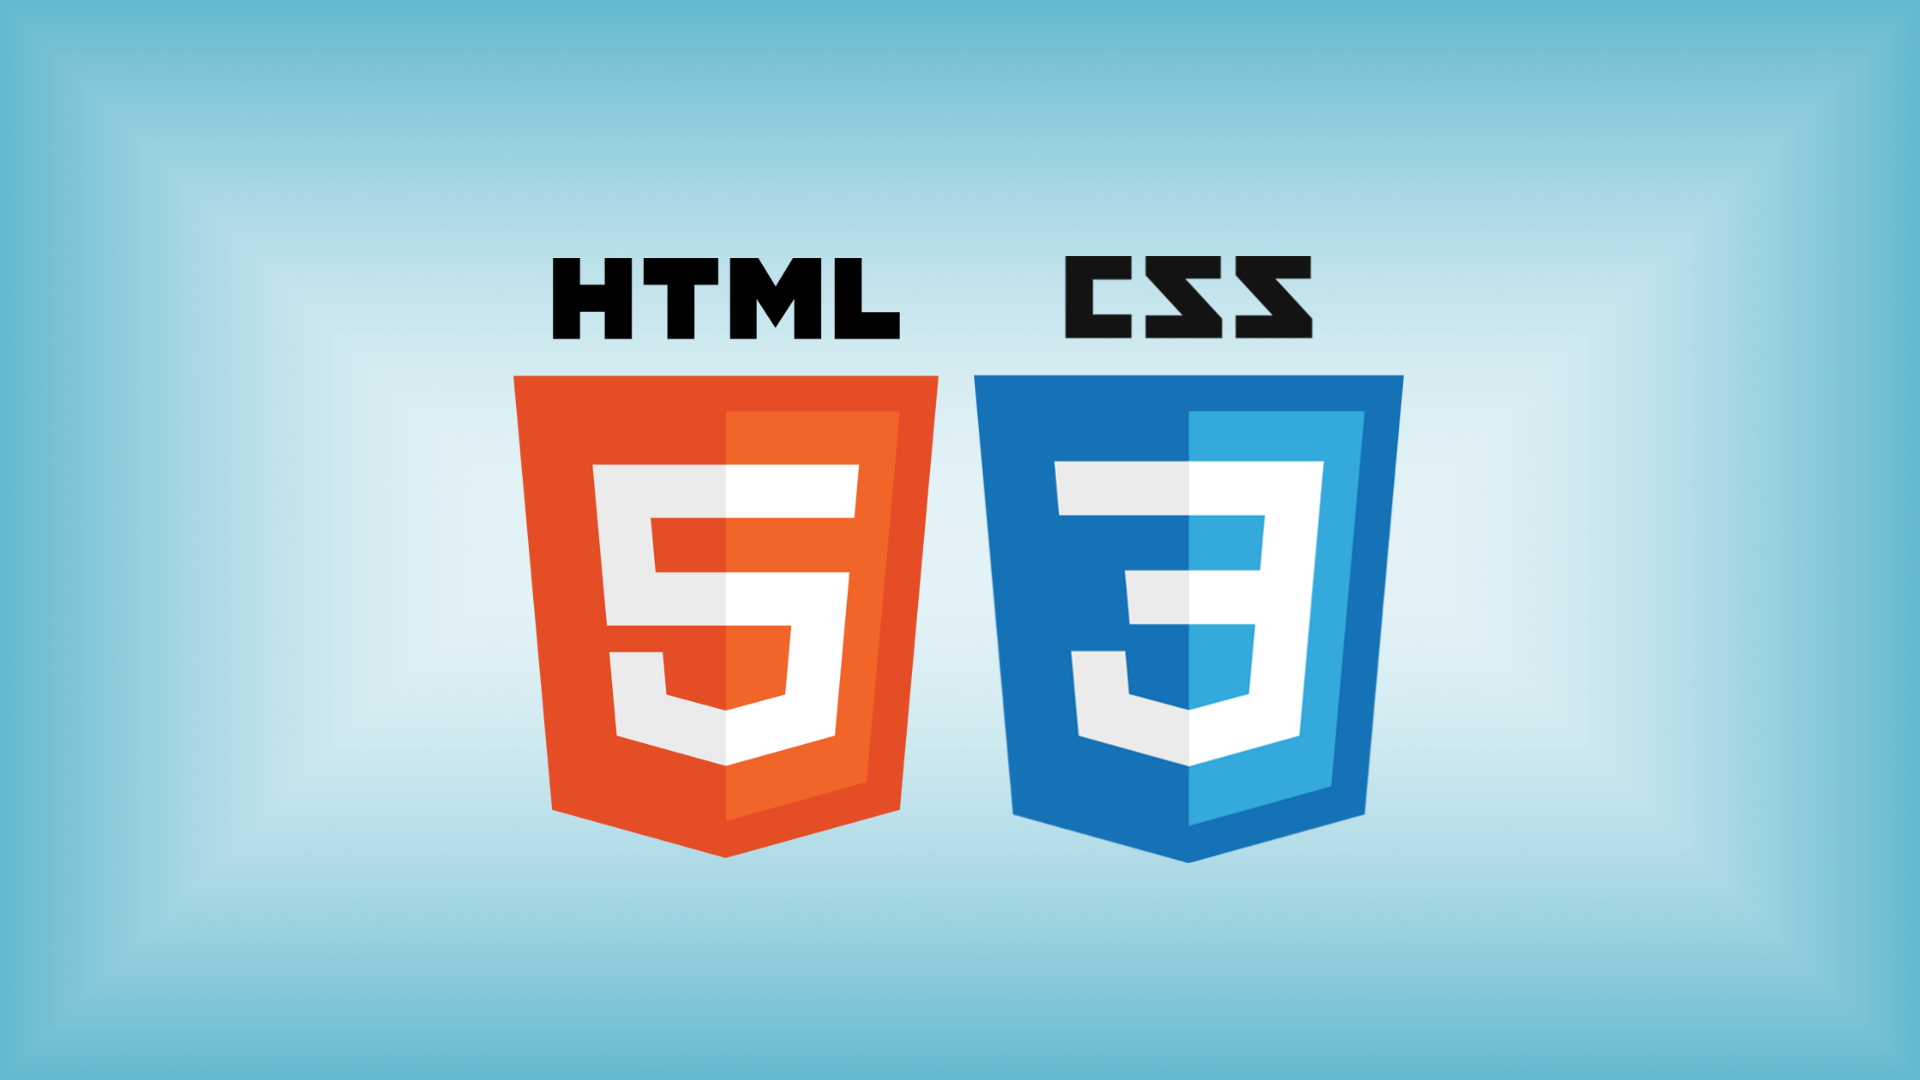 Проекта html css. Html & CSS. Картинки html CSS. CSS фото html. Картинка html CSS js.